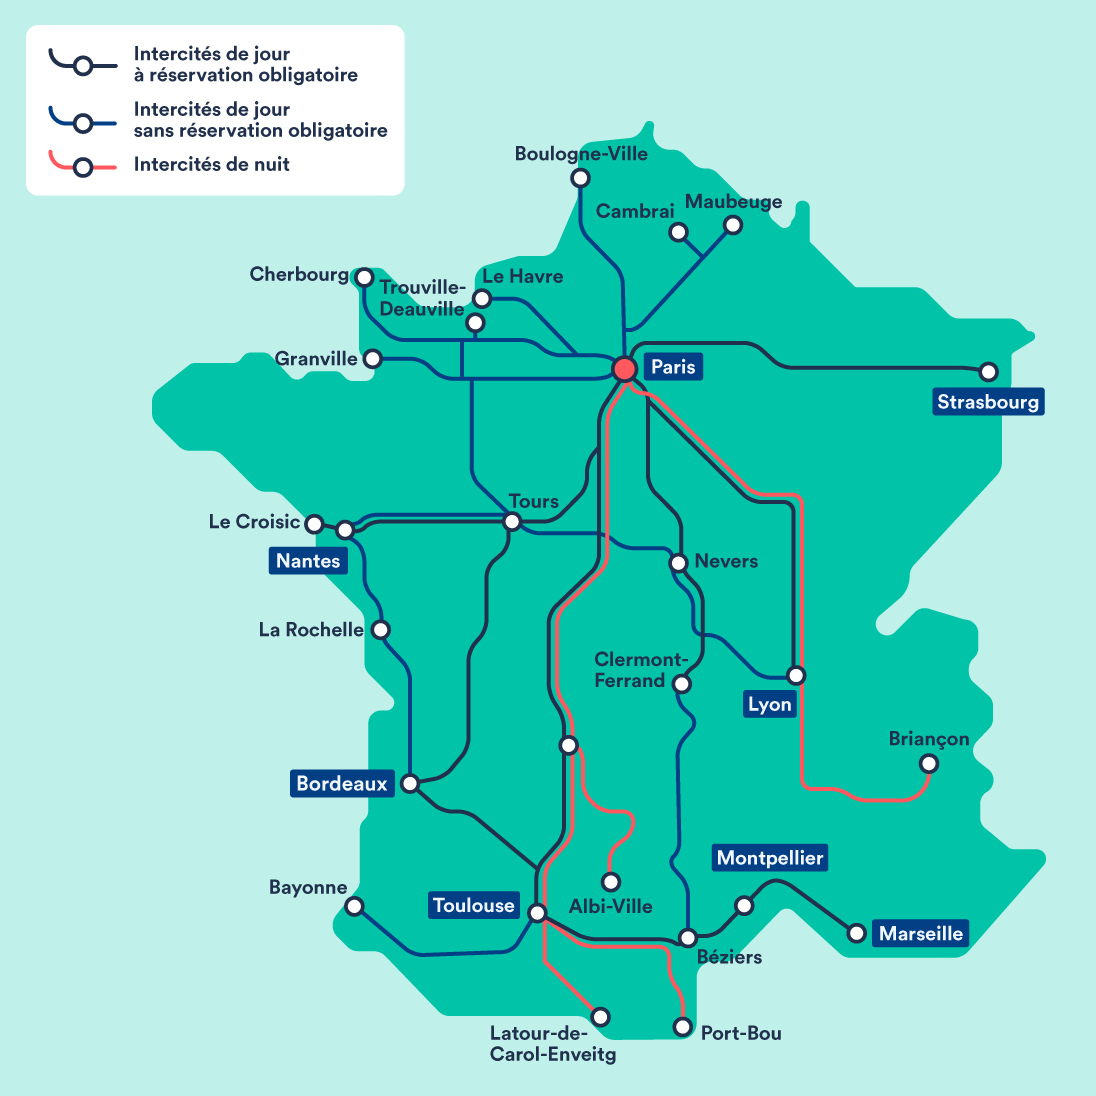 Horaire SNCF Direct | Suivre Horaires Train en Direct | Trainline